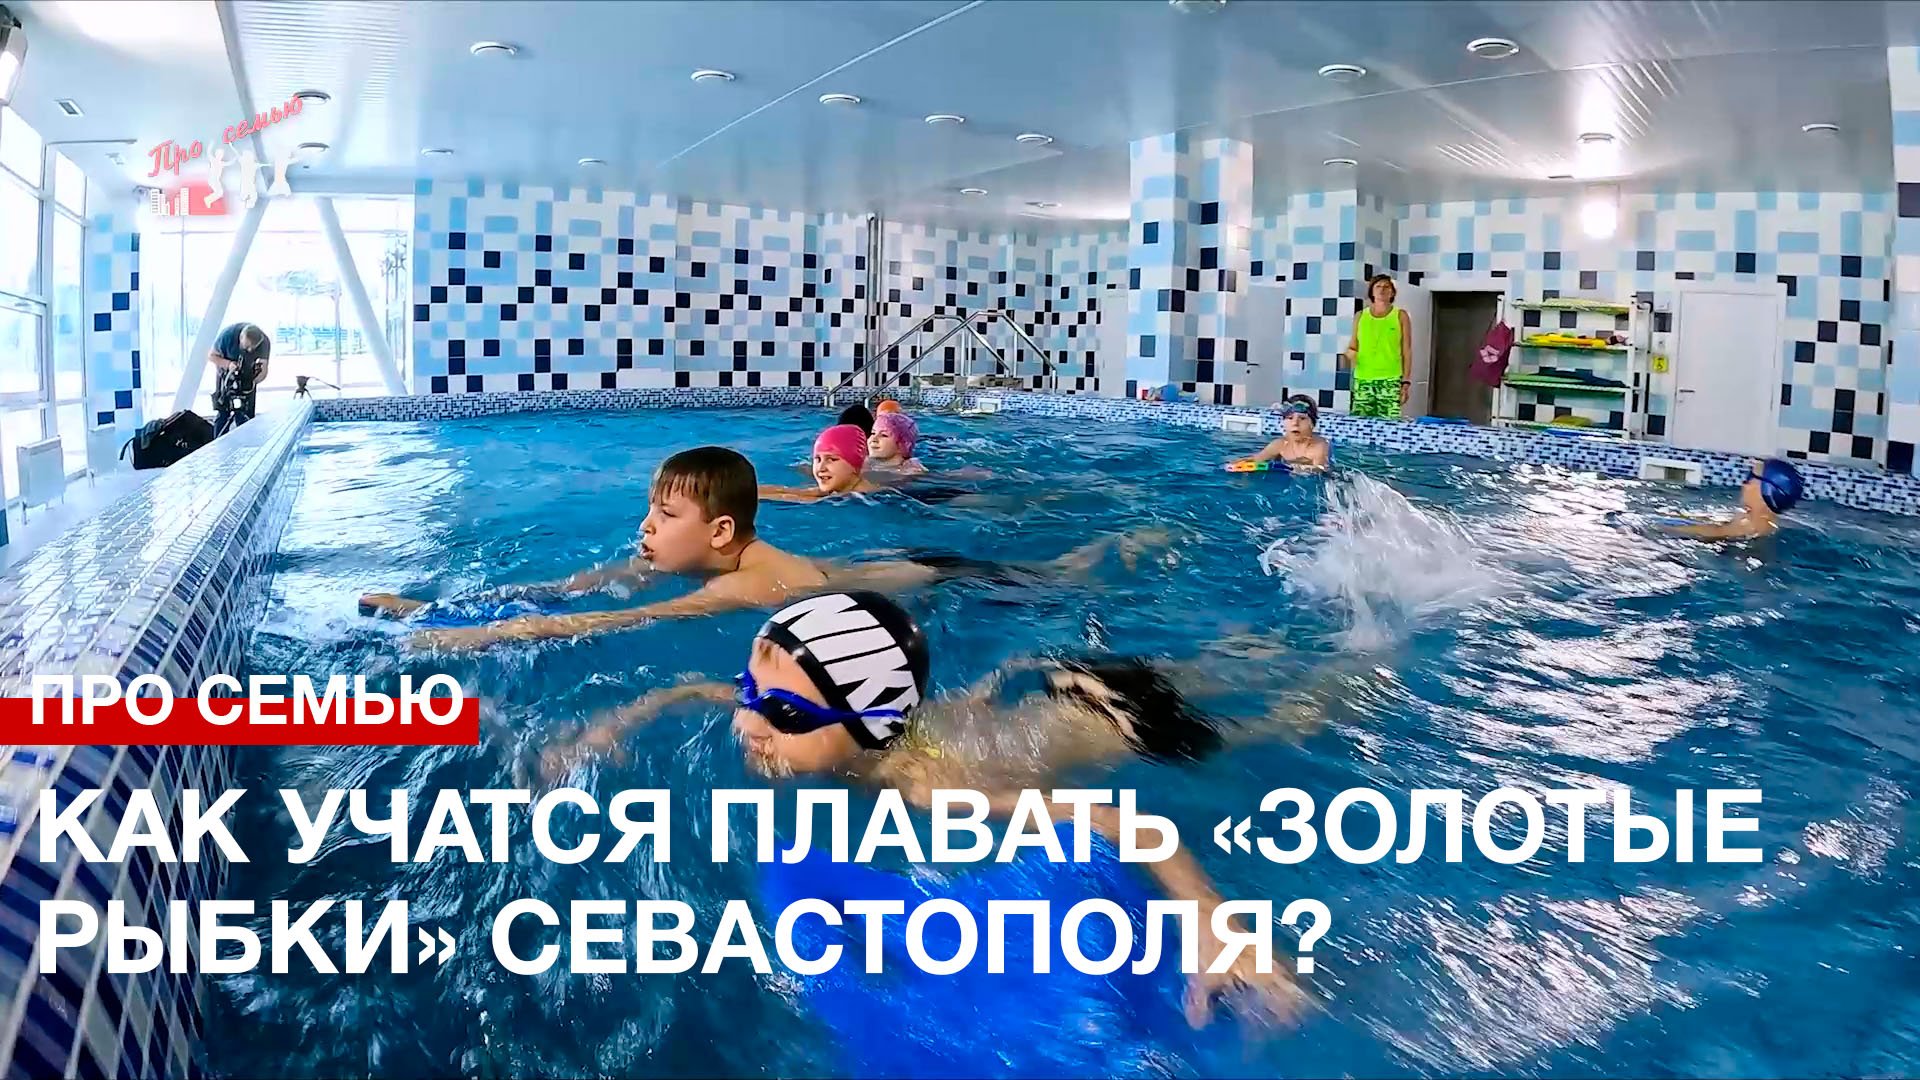 Про семью: как учатся плавать севастопольские «золотые рыбки»?